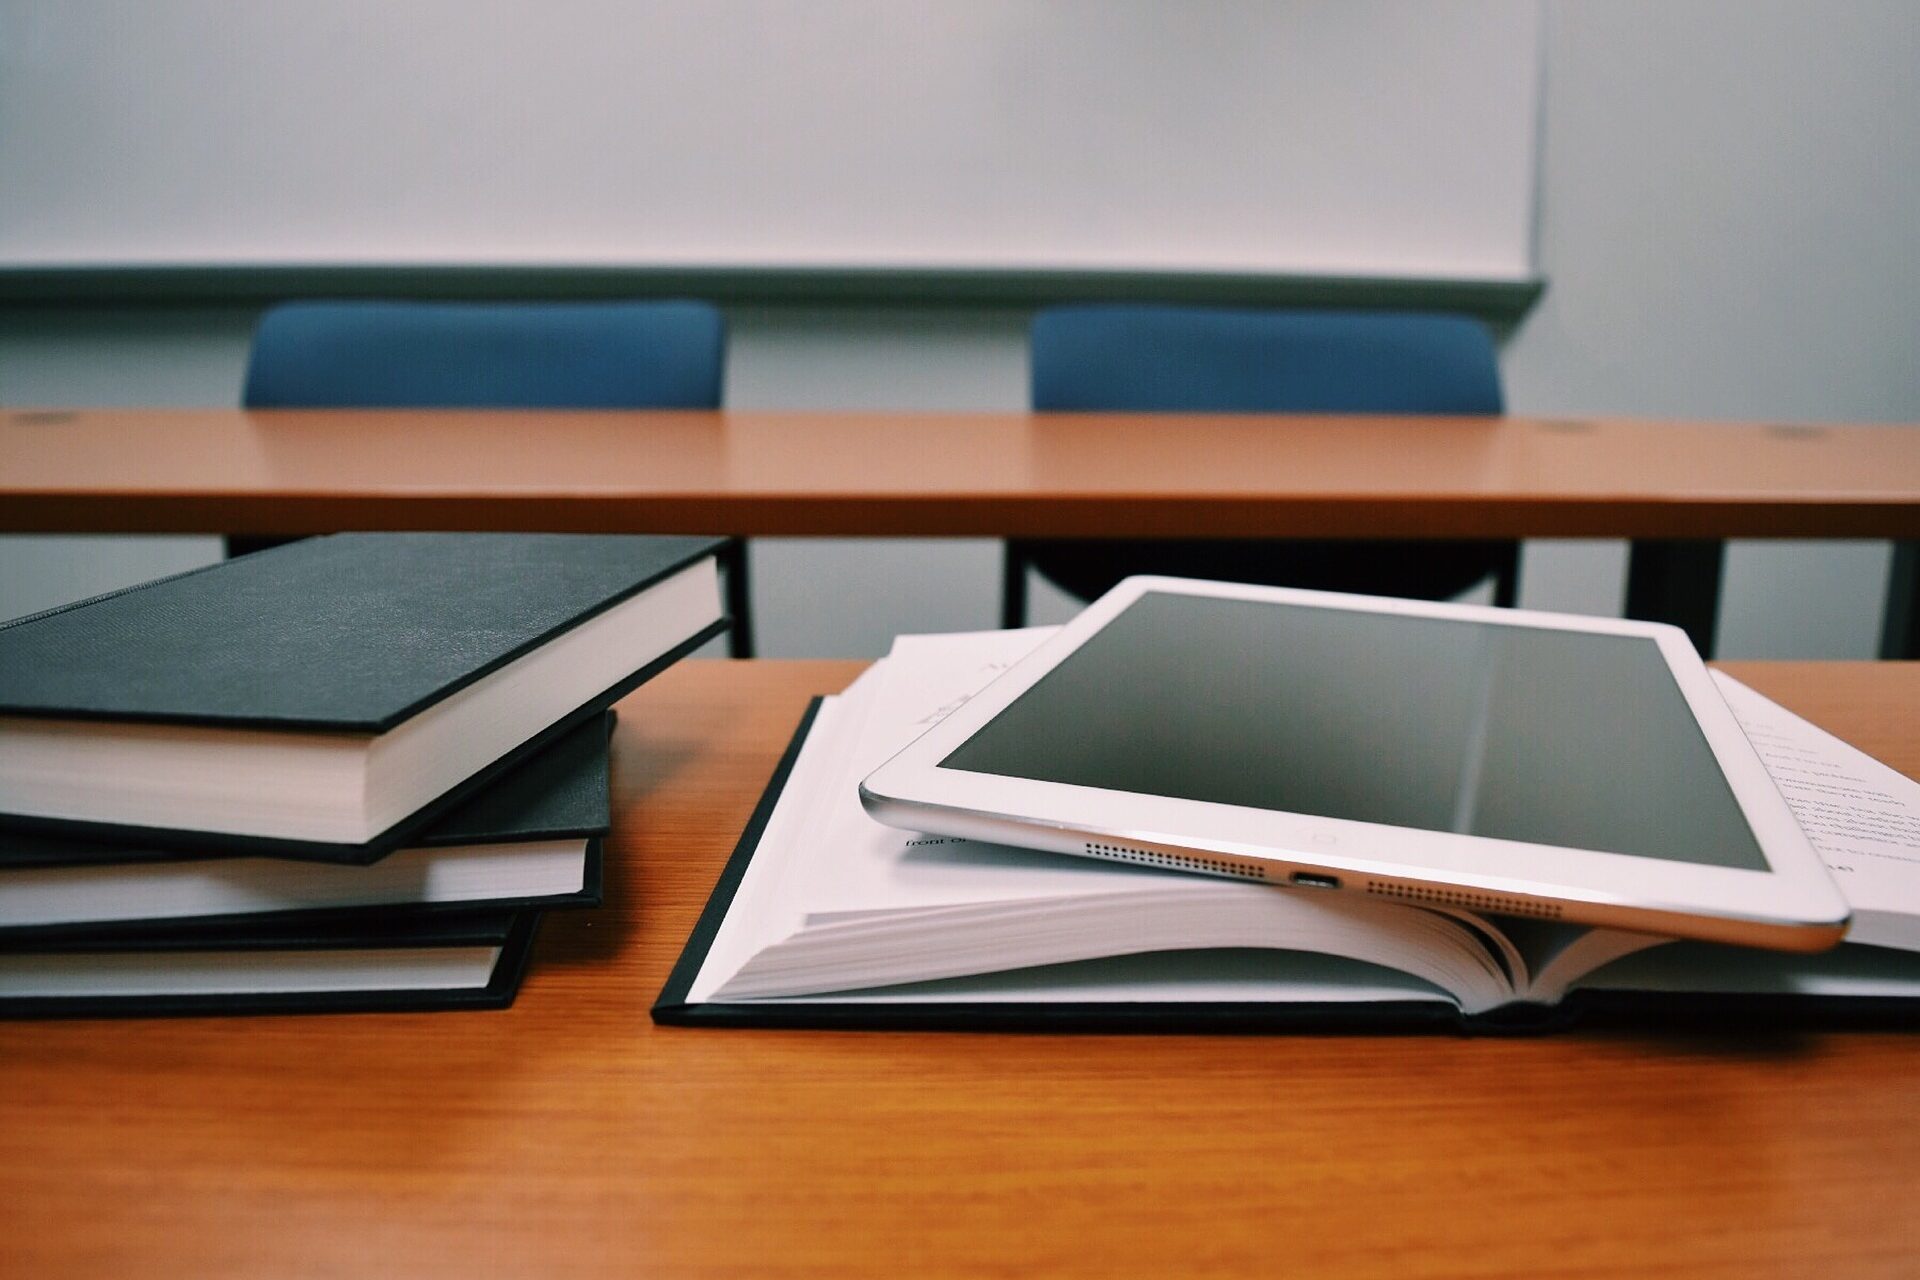 Bücher und ein Tablet auf einer Schulbank zur Veranschaulichung von Schulbildung